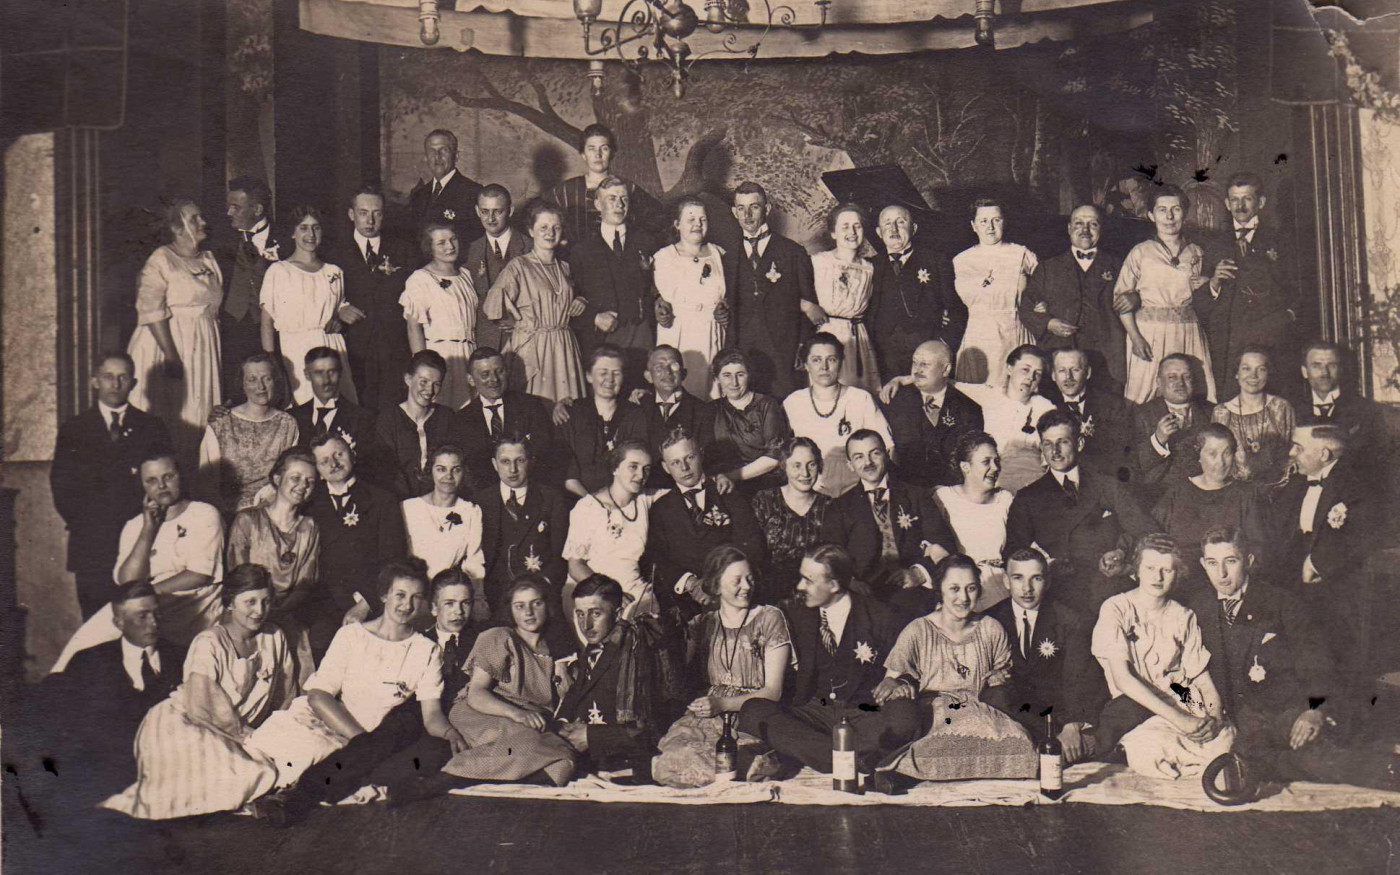 111 Jahre Club Frohsinn: Die Gentlemen in Lumpen - Gifhorner Gesellschaft organisiert Bälle, Silvesterpartys und Vatertagsausflüge